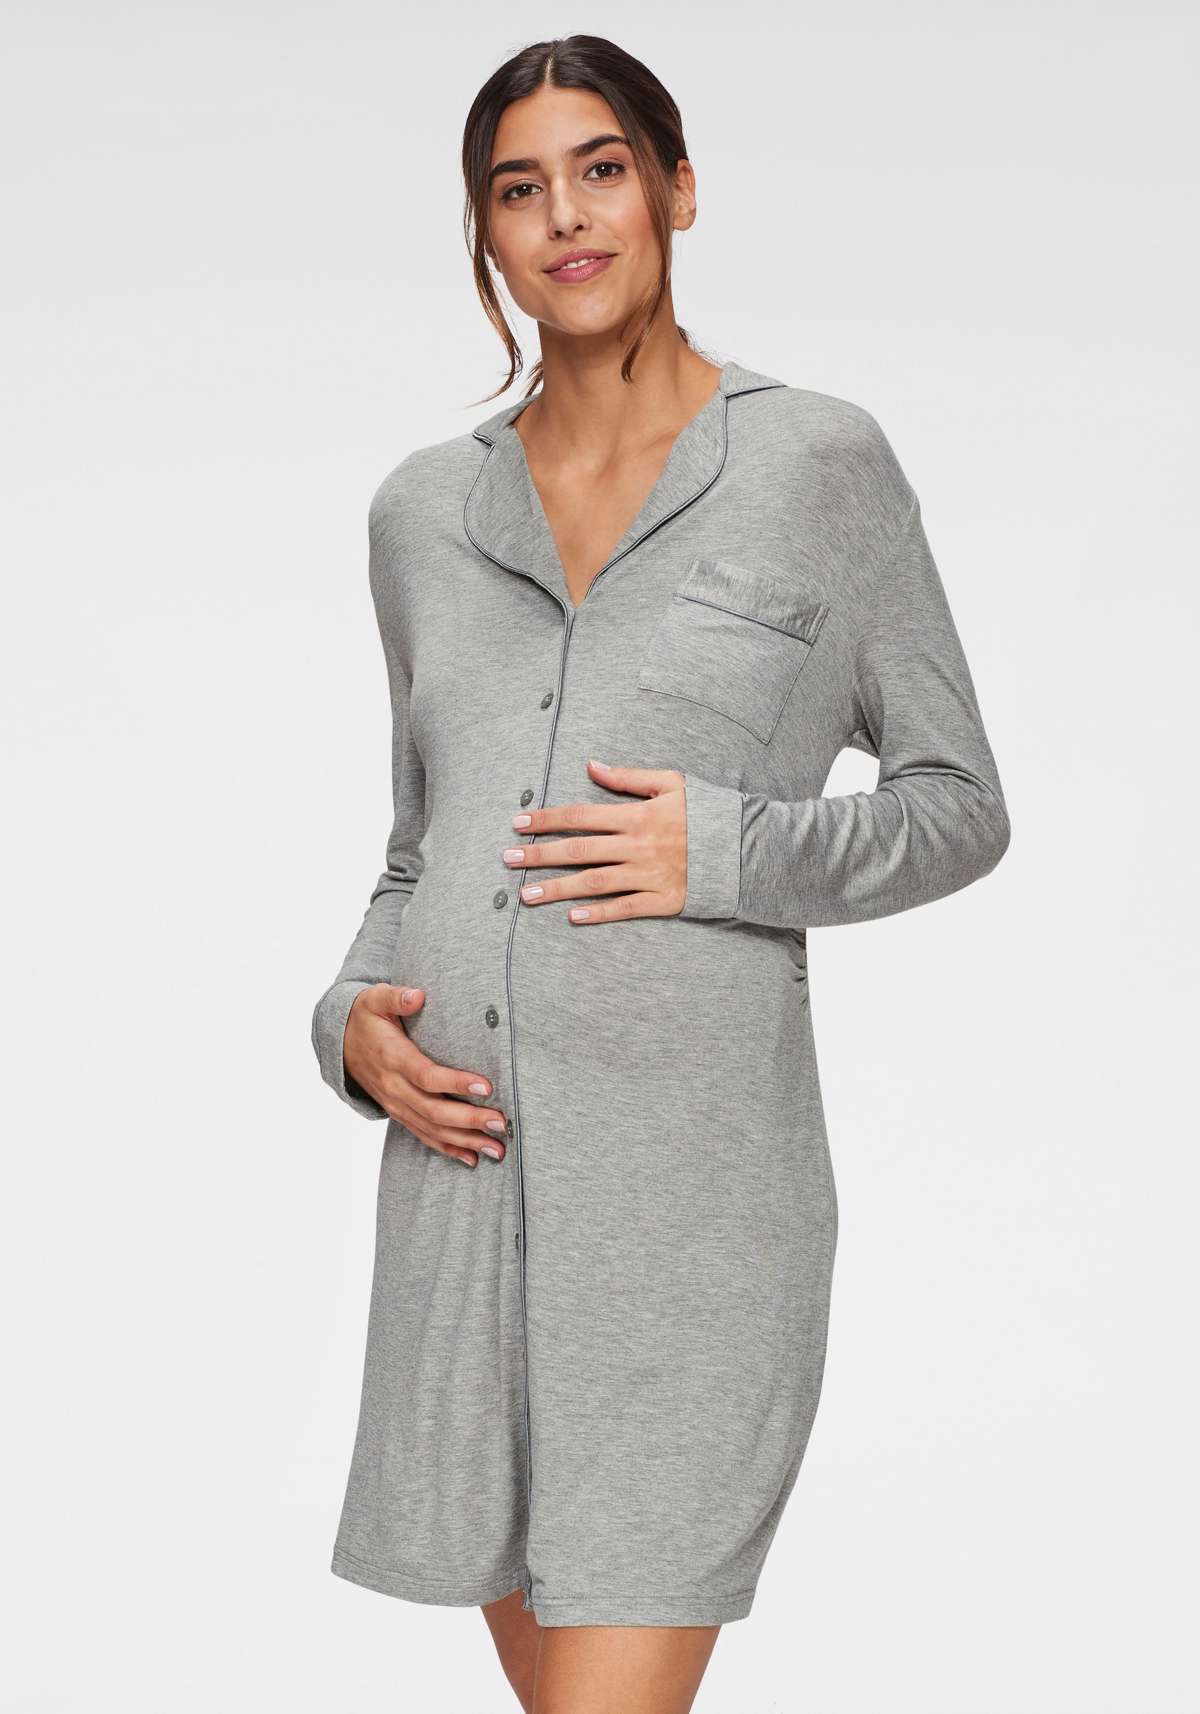 Ночная рубашка для беременных с планкой на пуговицах и рюшами по боковому шву.